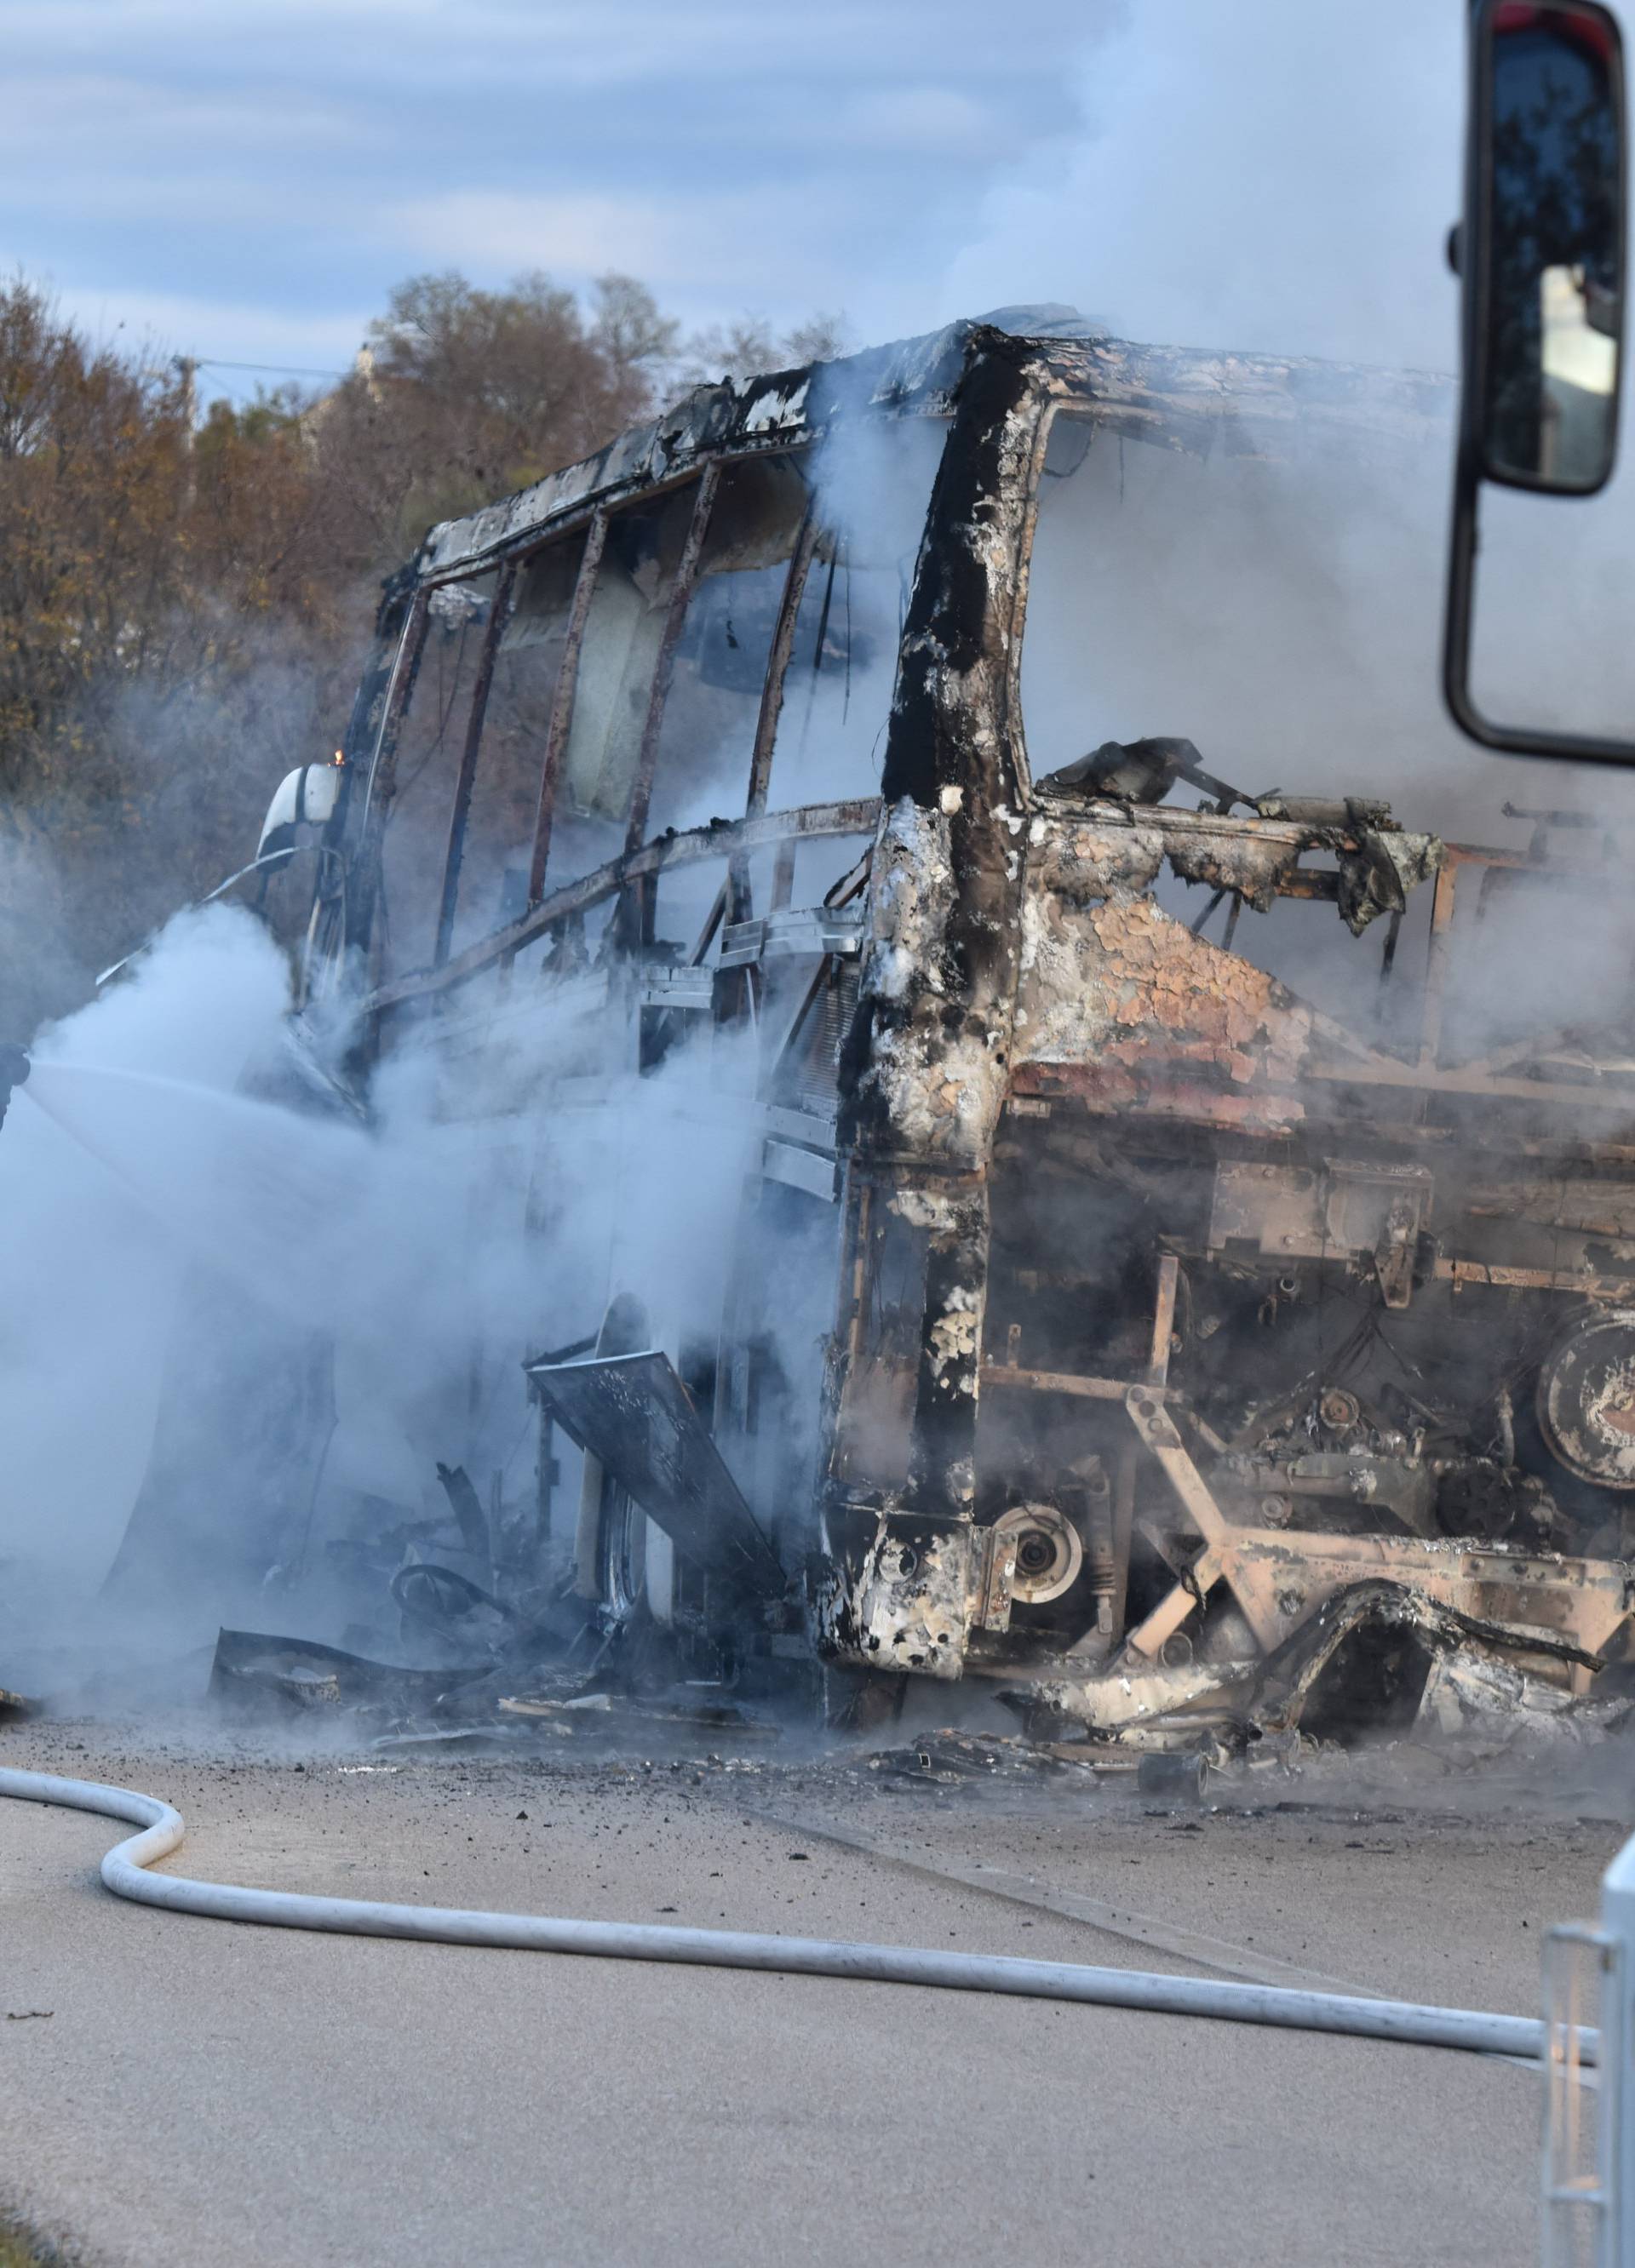 Danilo Kraljice: Vatrogasci gase autobus koji se zapalio